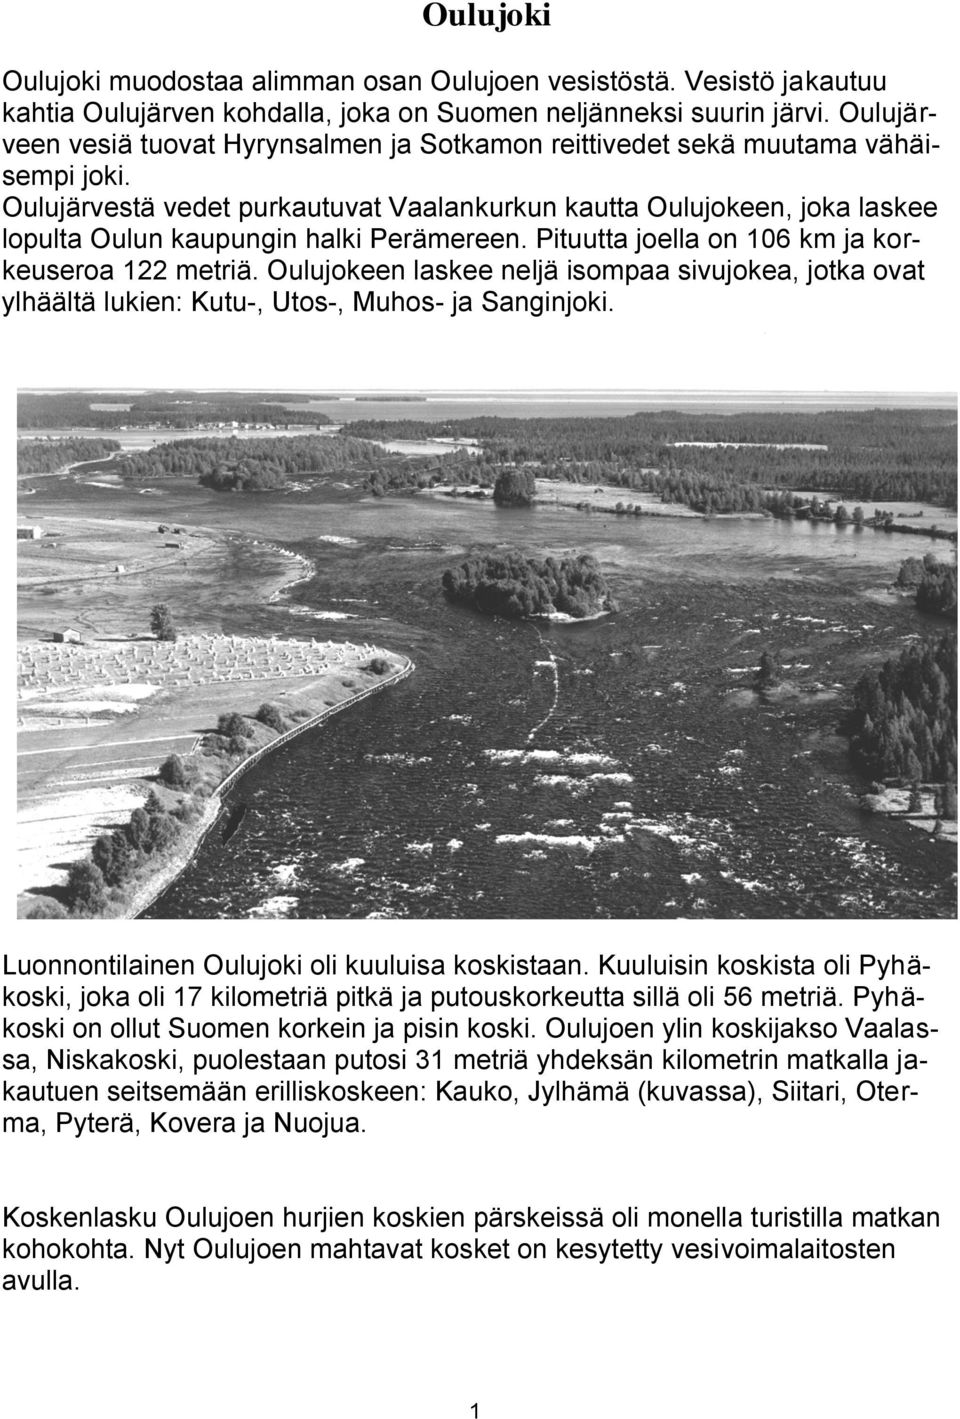 Oulujärvestä vedet purkautuvat Vaalankurkun kautta Oulujokeen, joka laskee lopulta Oulun kaupungin halki Perämereen. Pituutta joella on 106 km ja korkeuseroa 122 metriä.